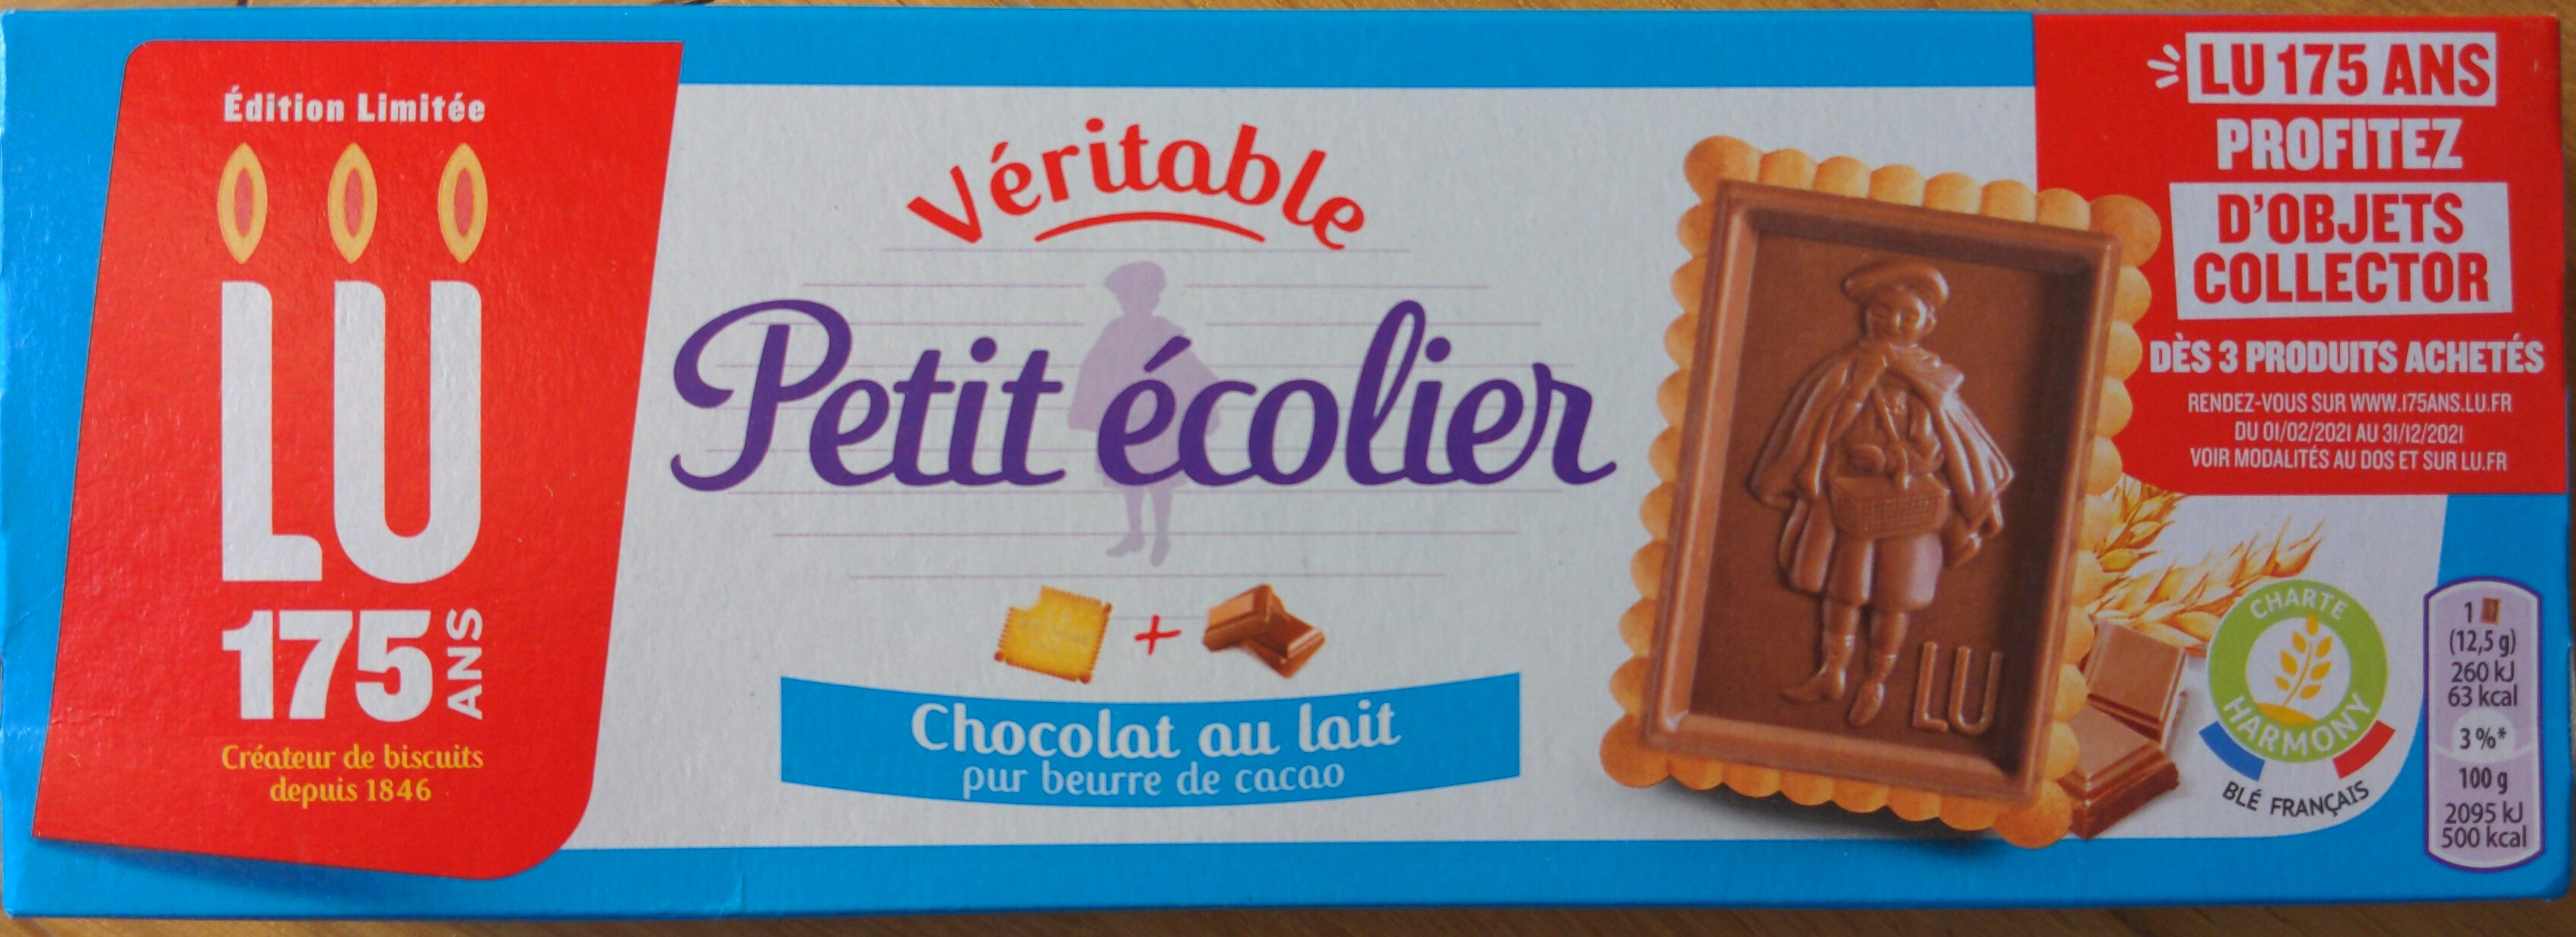 Véritable Petit Écolier Chocolat au Lait - Product - fr